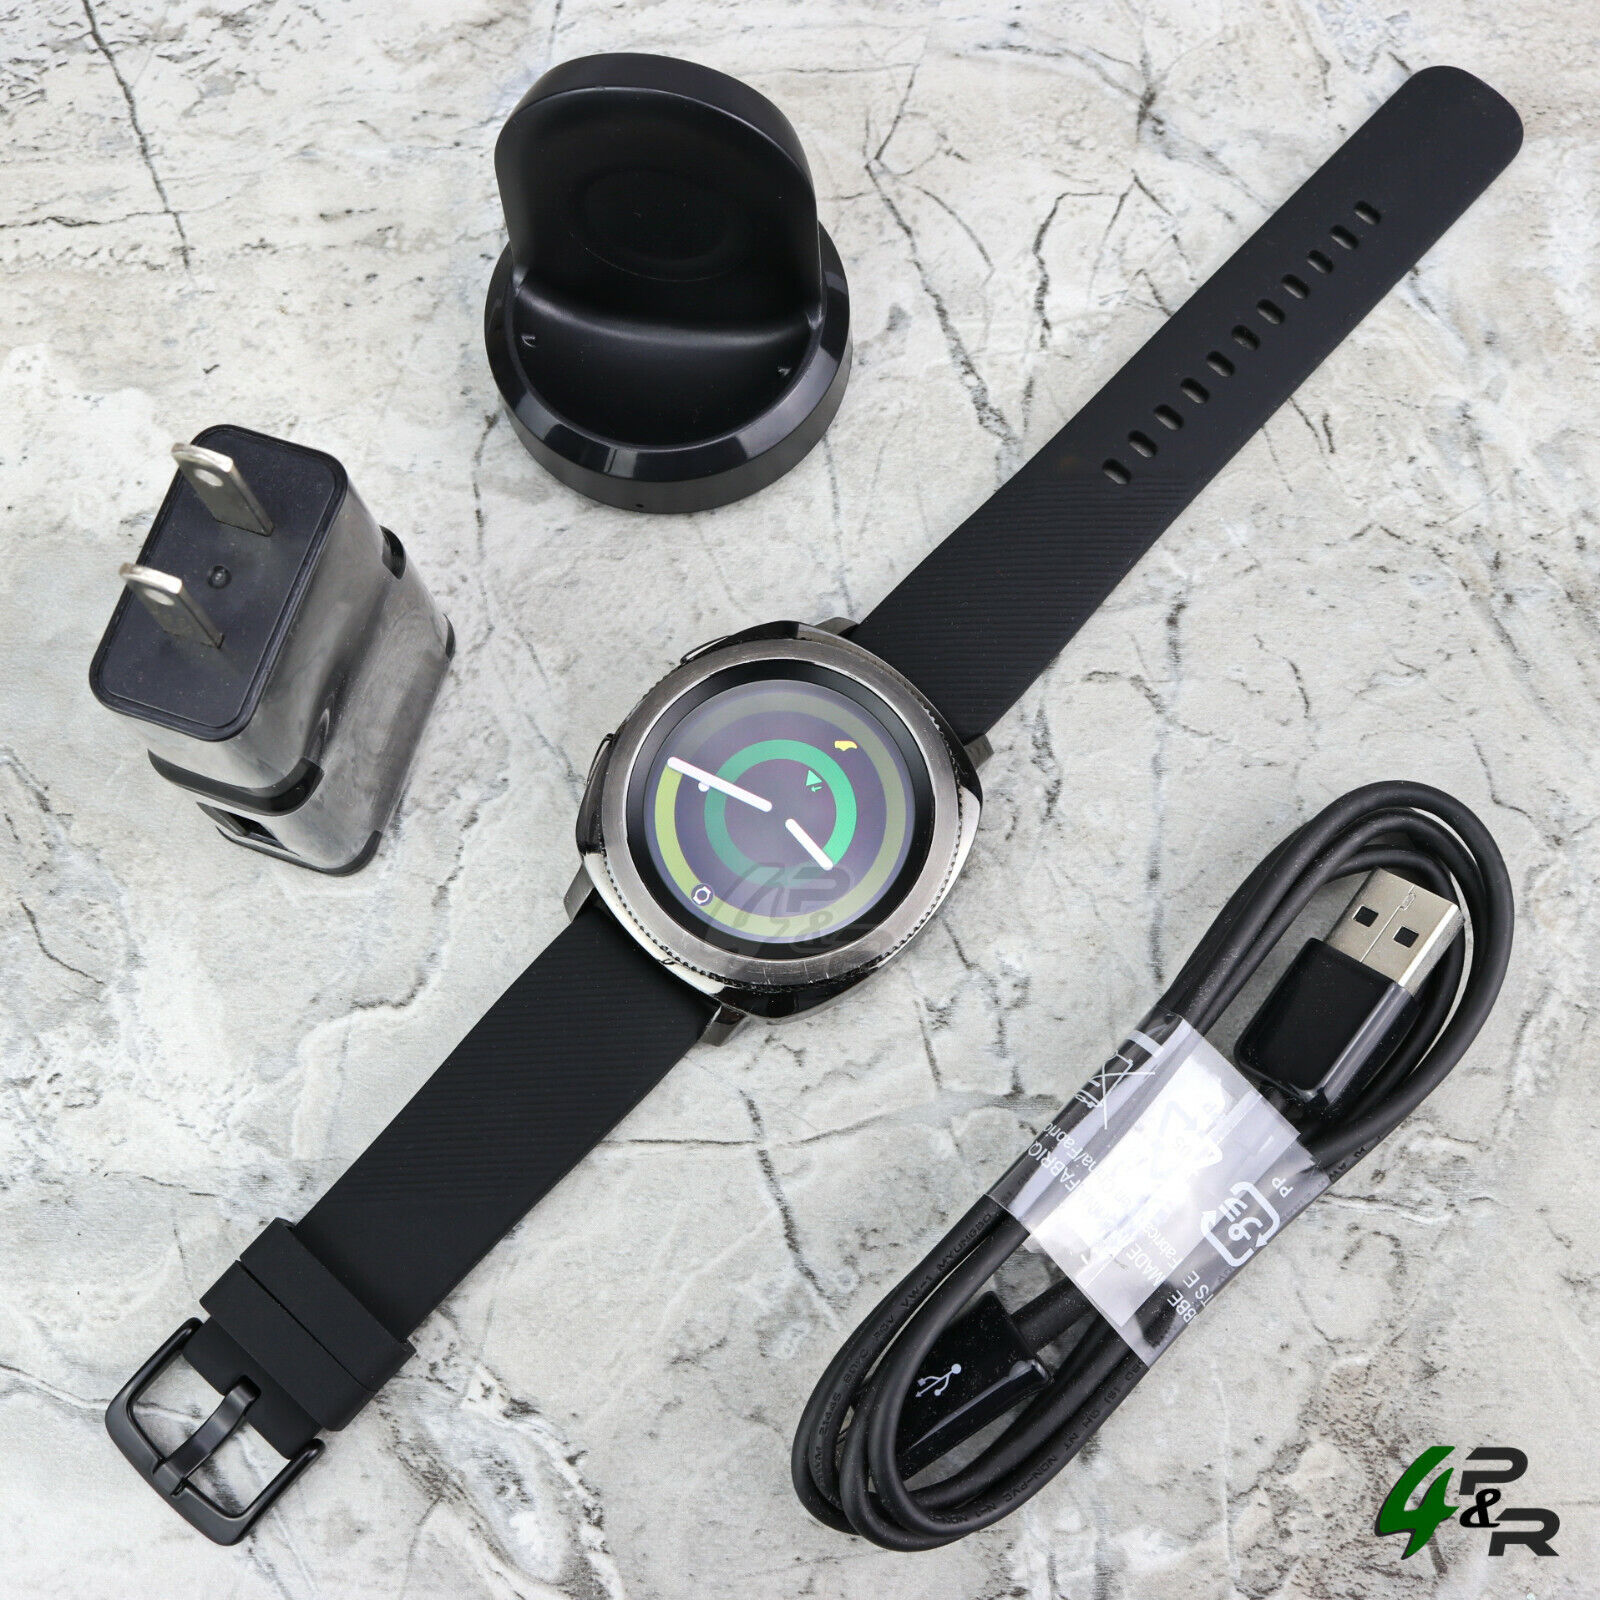 Samsung Galaxy Gear Sport Hybrid SM-R600 Black Smartwatch w/ Medium Size Band Samsung SM-R600NZKAXAR